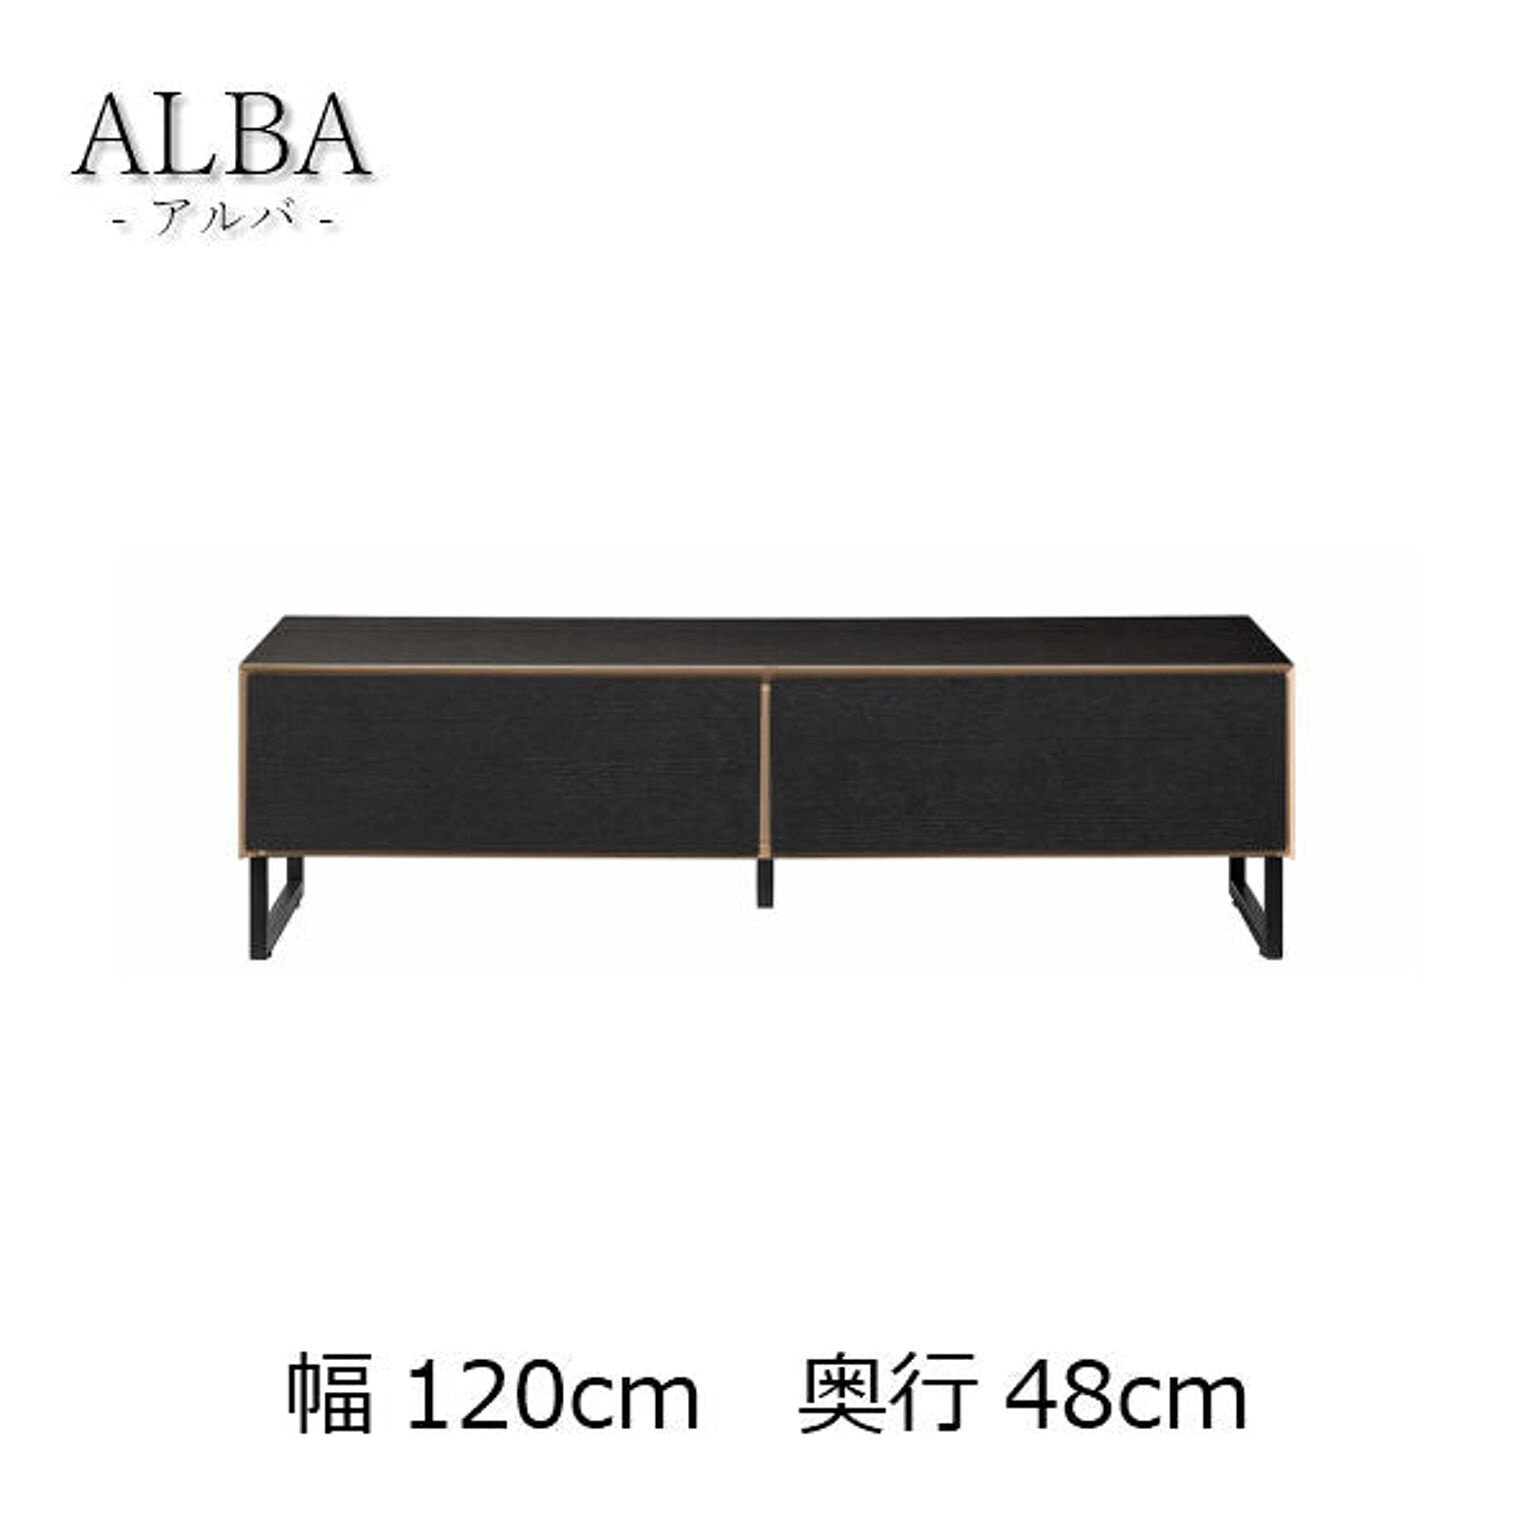 リビングテーブル 幅120 高さ35 ブラック色 ローテーブル センターテーブル ALBA アルバ ALBL-121UBK